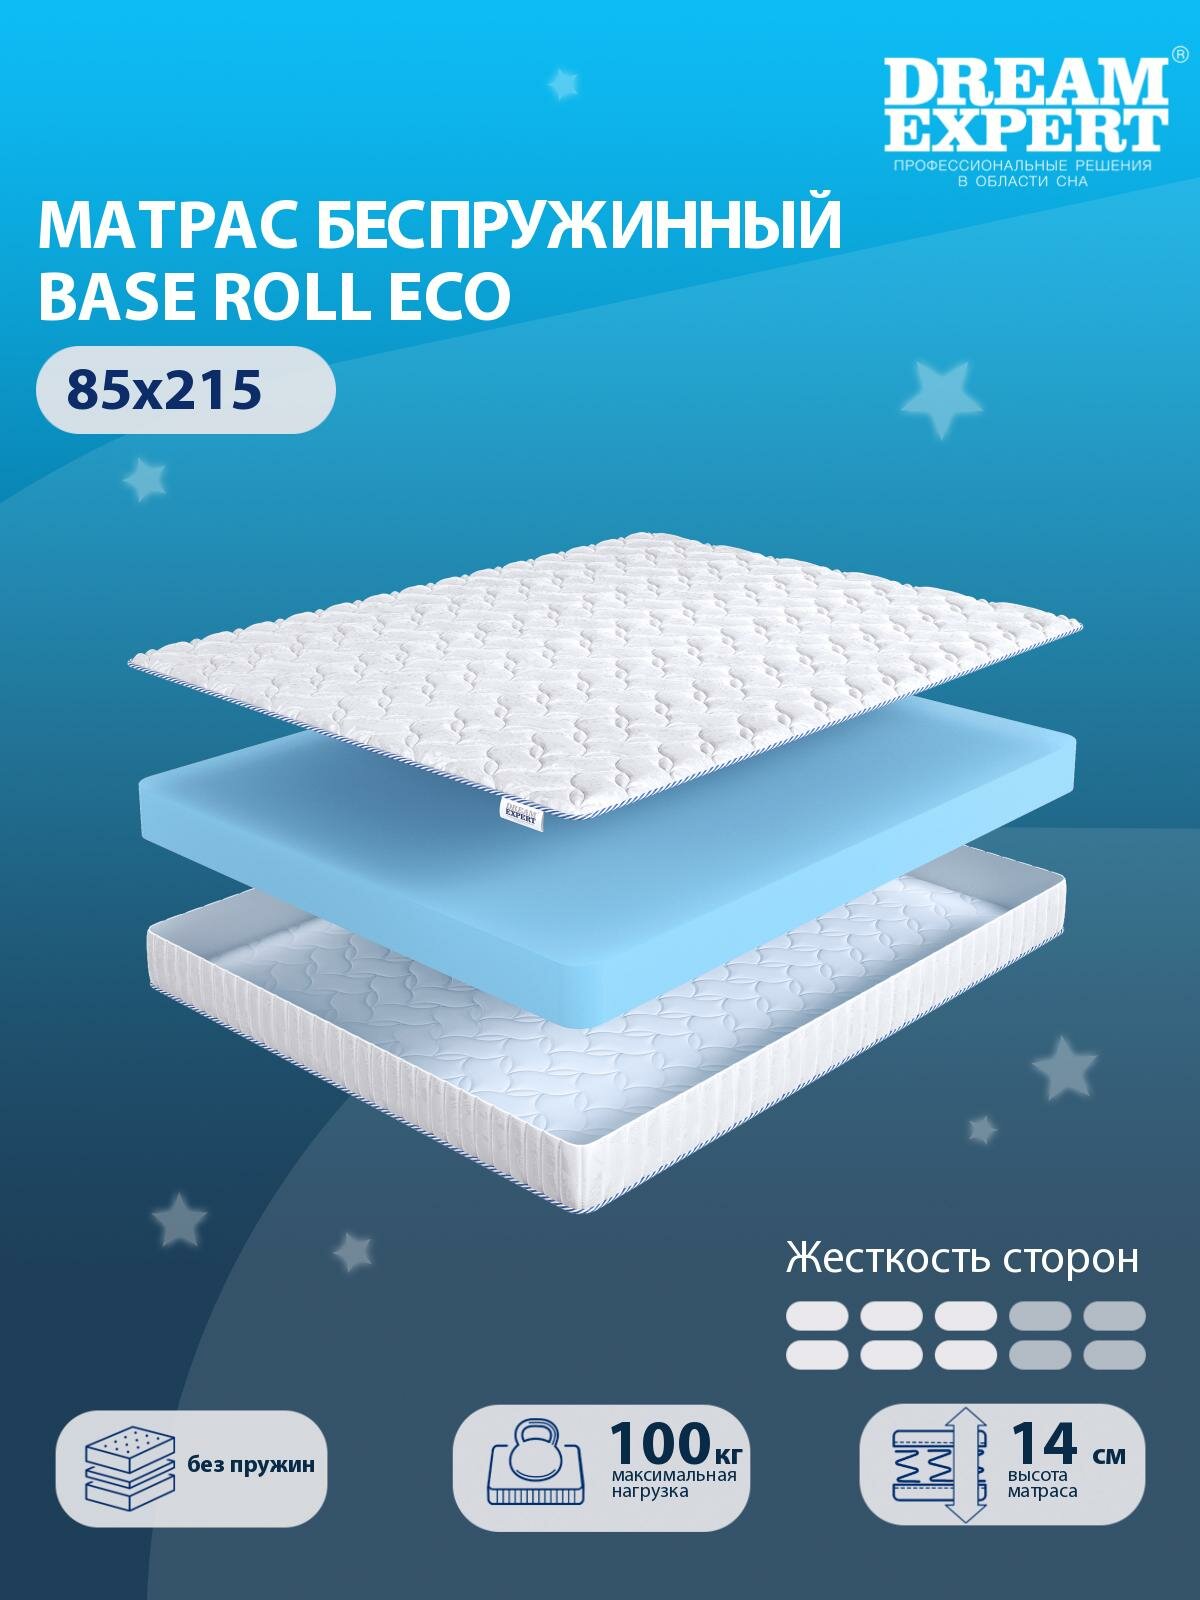 Матрас DreamExpert Base Roll Eco средней жесткости, односпальный, беспружинный, на кровать 85x215